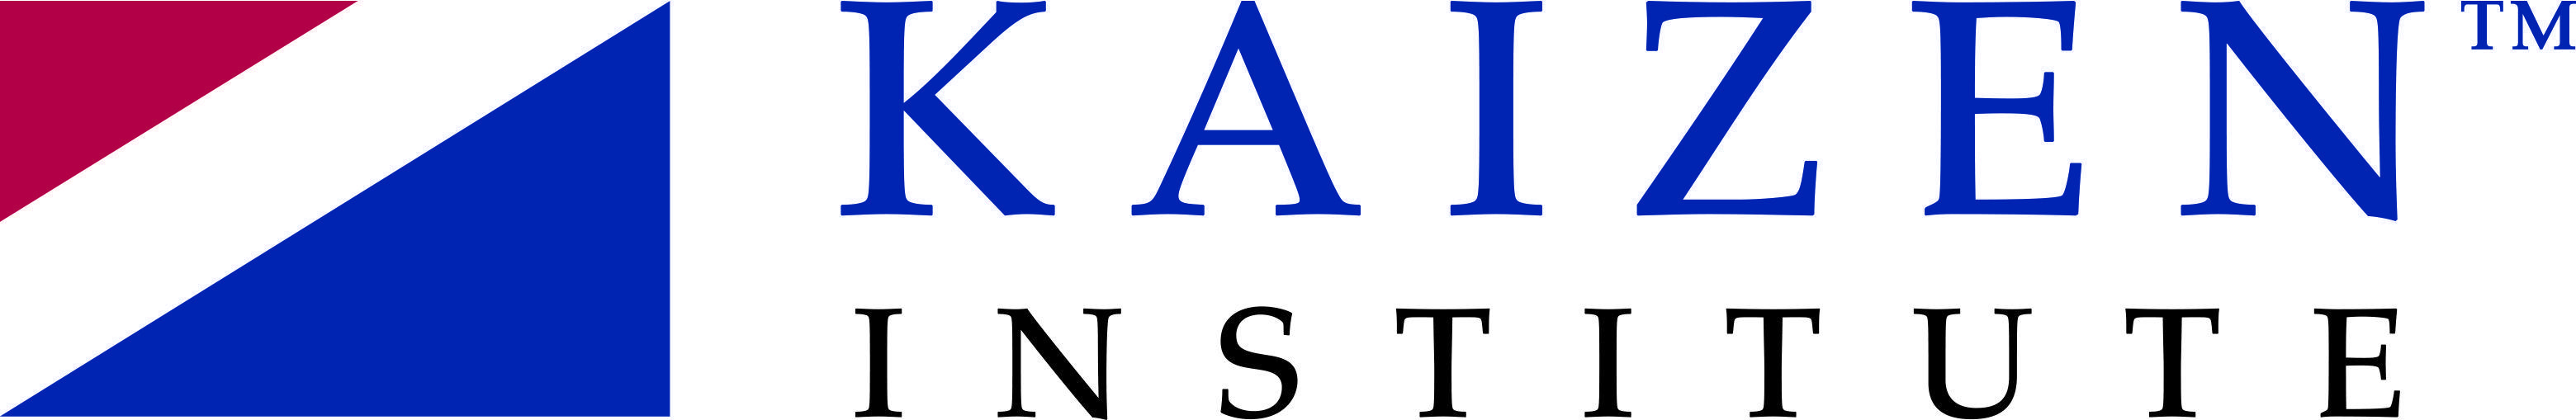 Kaizen Logo - Kaizen Institute Brand. Kaizen Logos. Kaizn Institute Consulting